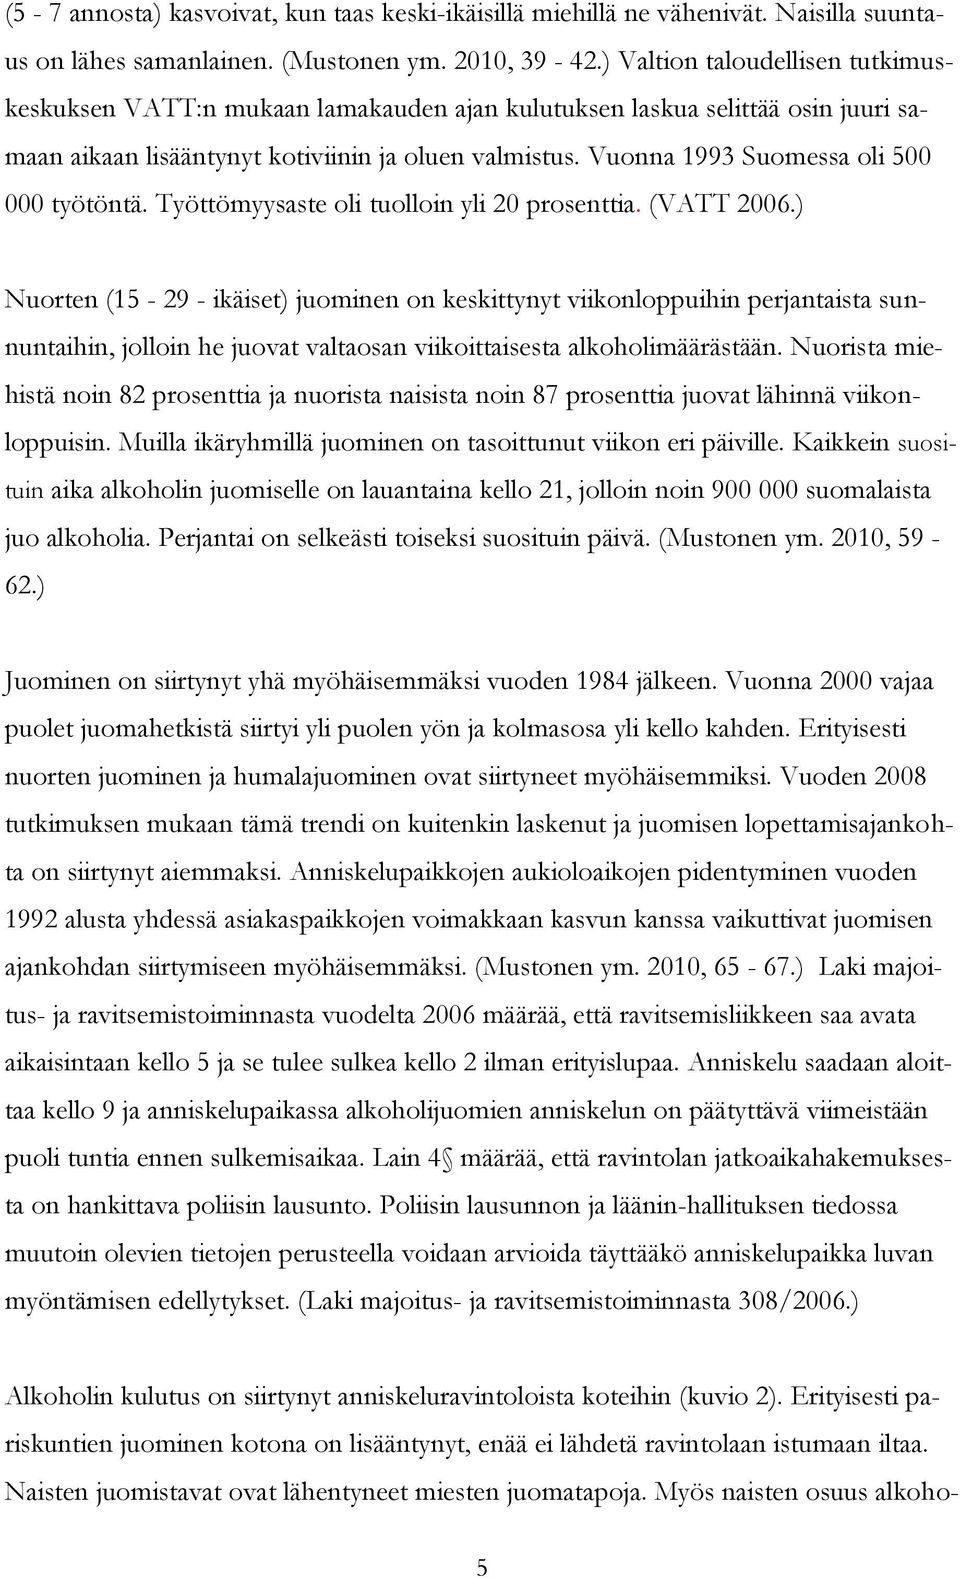 Vuonna 1993 Suomessa oli 500 000 työtöntä. Työttömyysaste oli tuolloin yli 20 prosenttia. (VATT 2006.